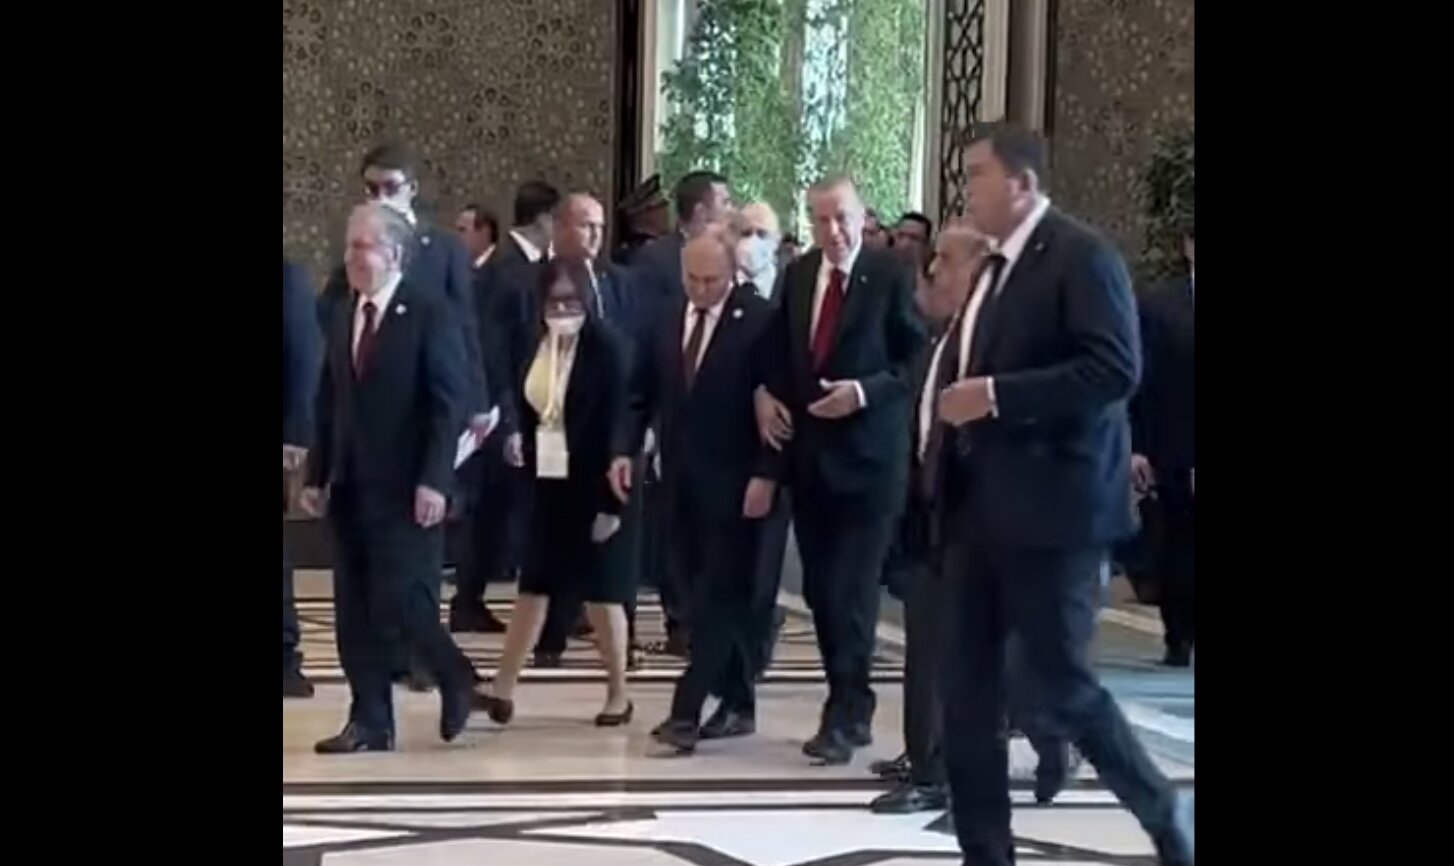 Οι κάμερες απαθανάτισαν πώς οι πρόεδροι της Ρωσίας και της Τουρκίας περπατούν….χέρι-χέρι.